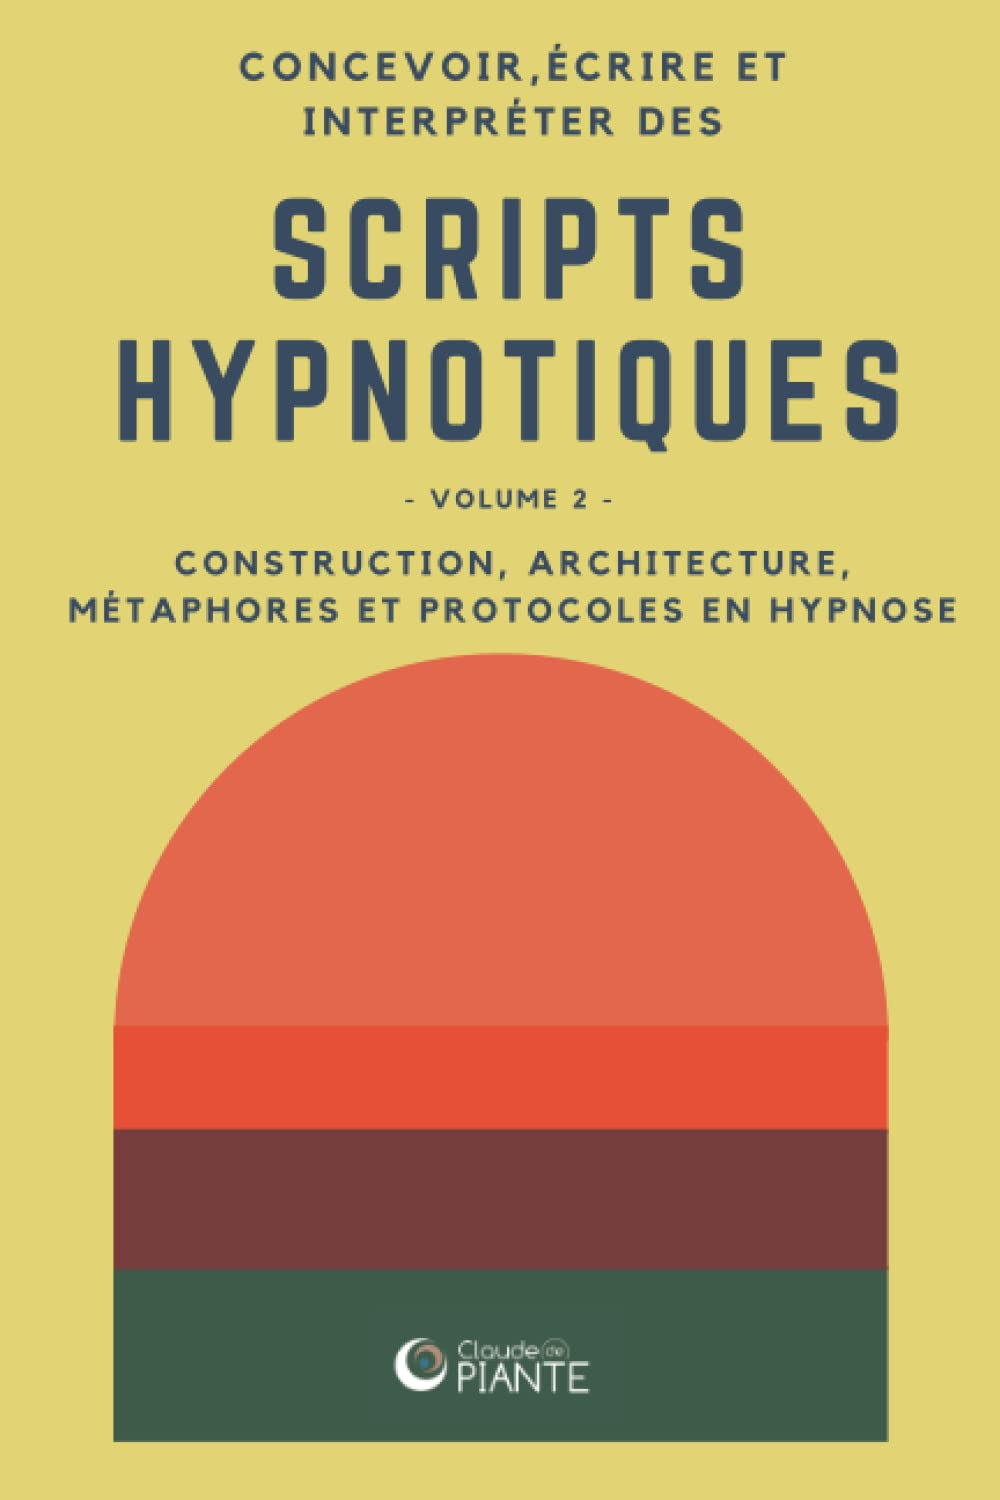 Concevoir, écrire et interpréter des scripts hypnotiques 2: Volume 2 - Construction, architecture, m